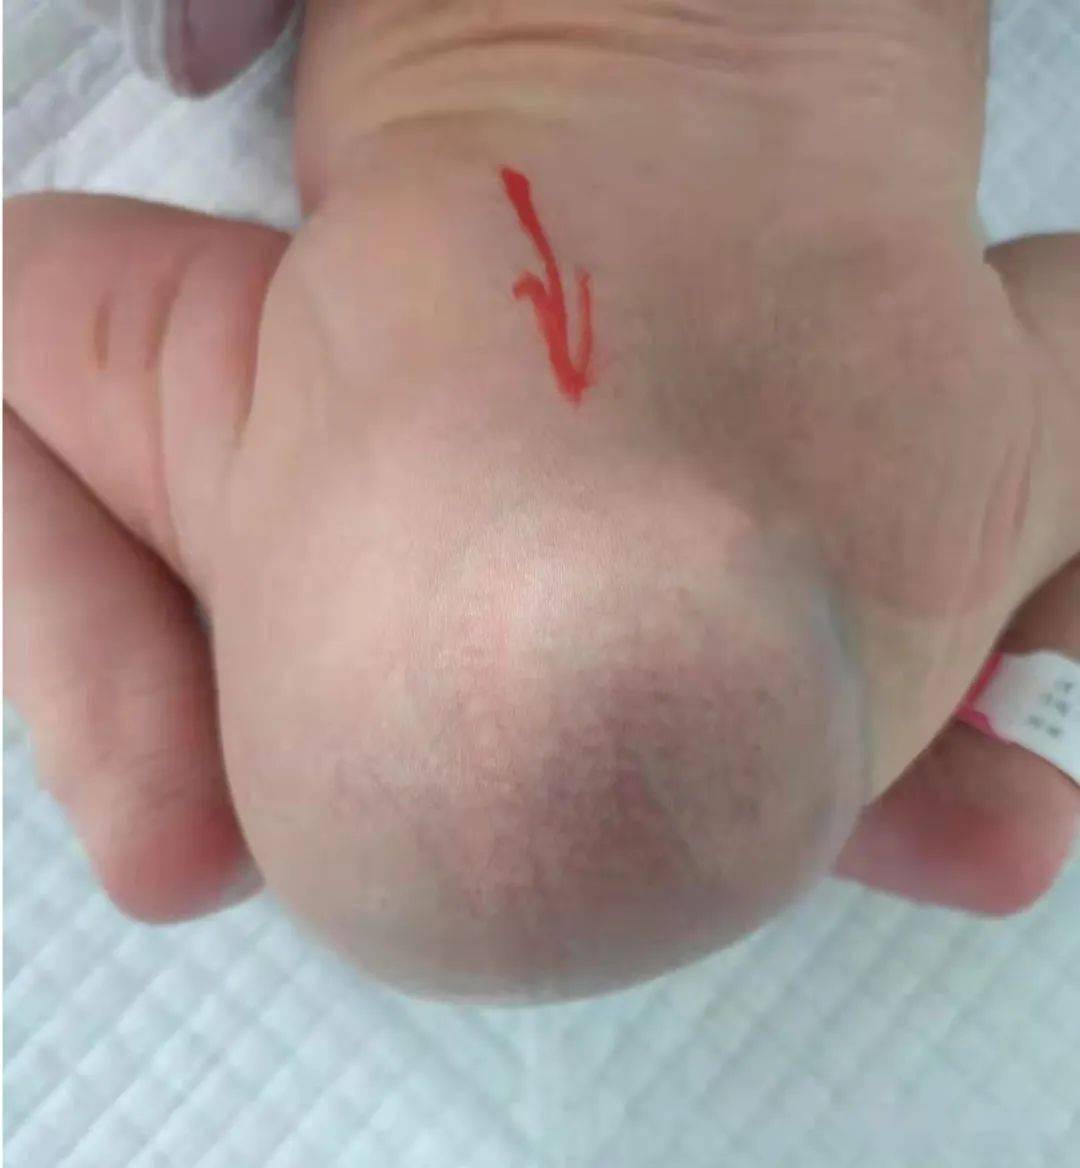 新生儿骶尾部凹陷图片图片